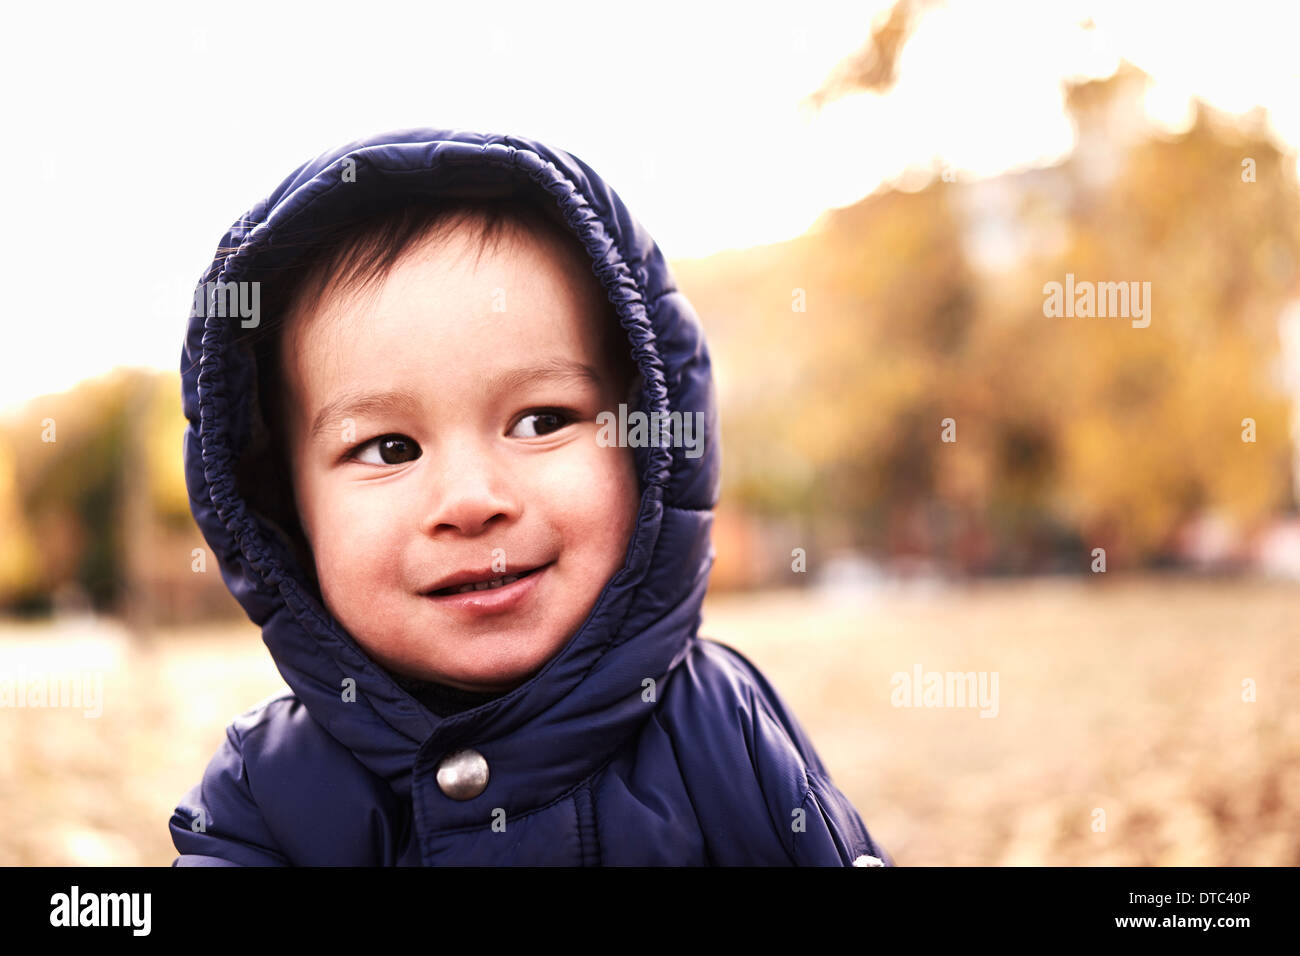 Ritratto di bambino in giacca con cappuccio Foto Stock